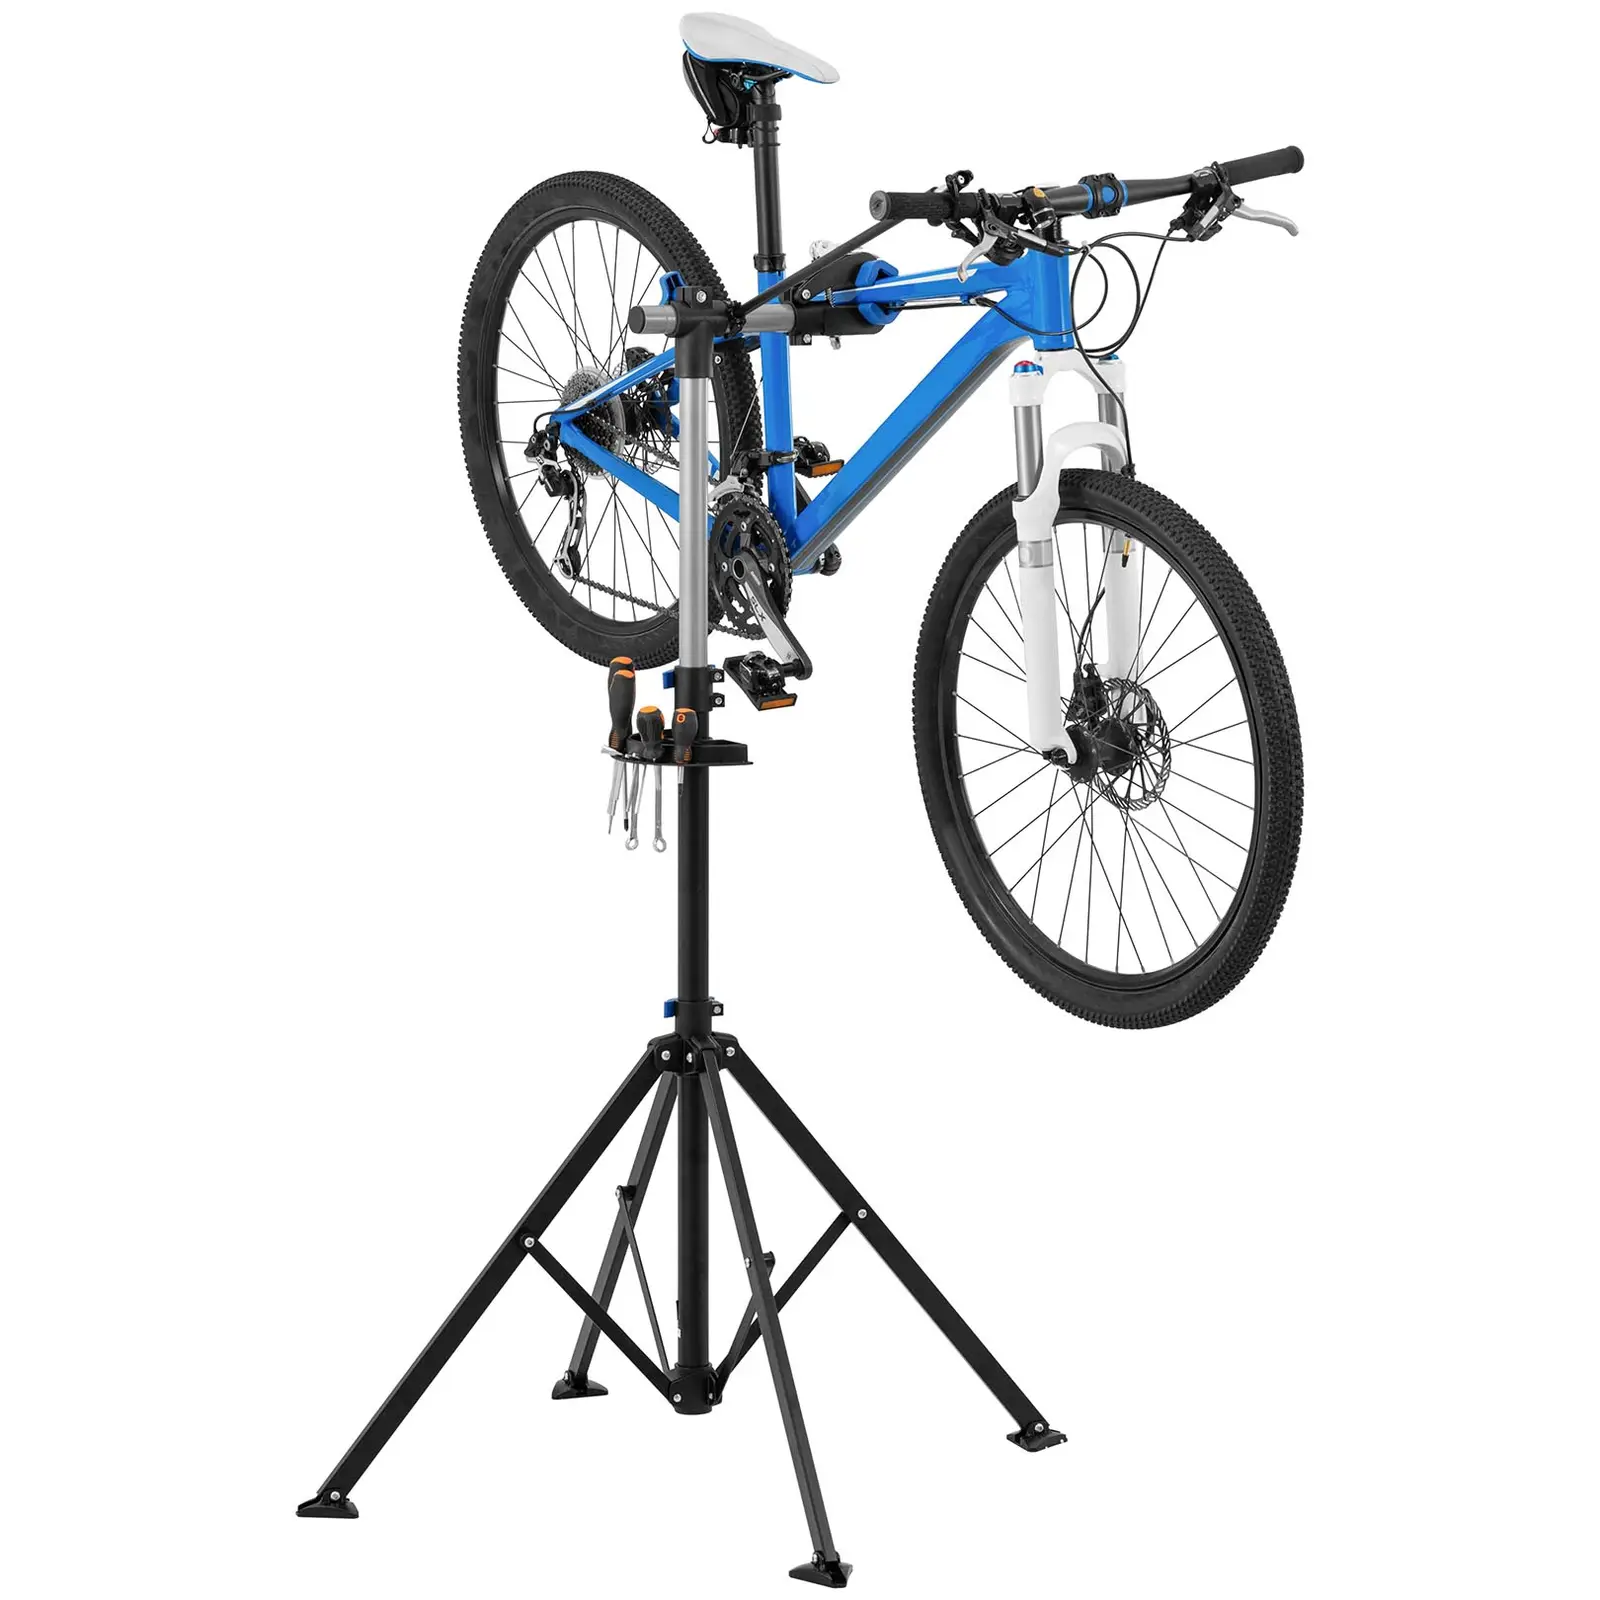 Stojak serwisowy do rowerów - 1080 - 1900 mm - składany - do 25 kg - 4 nogi